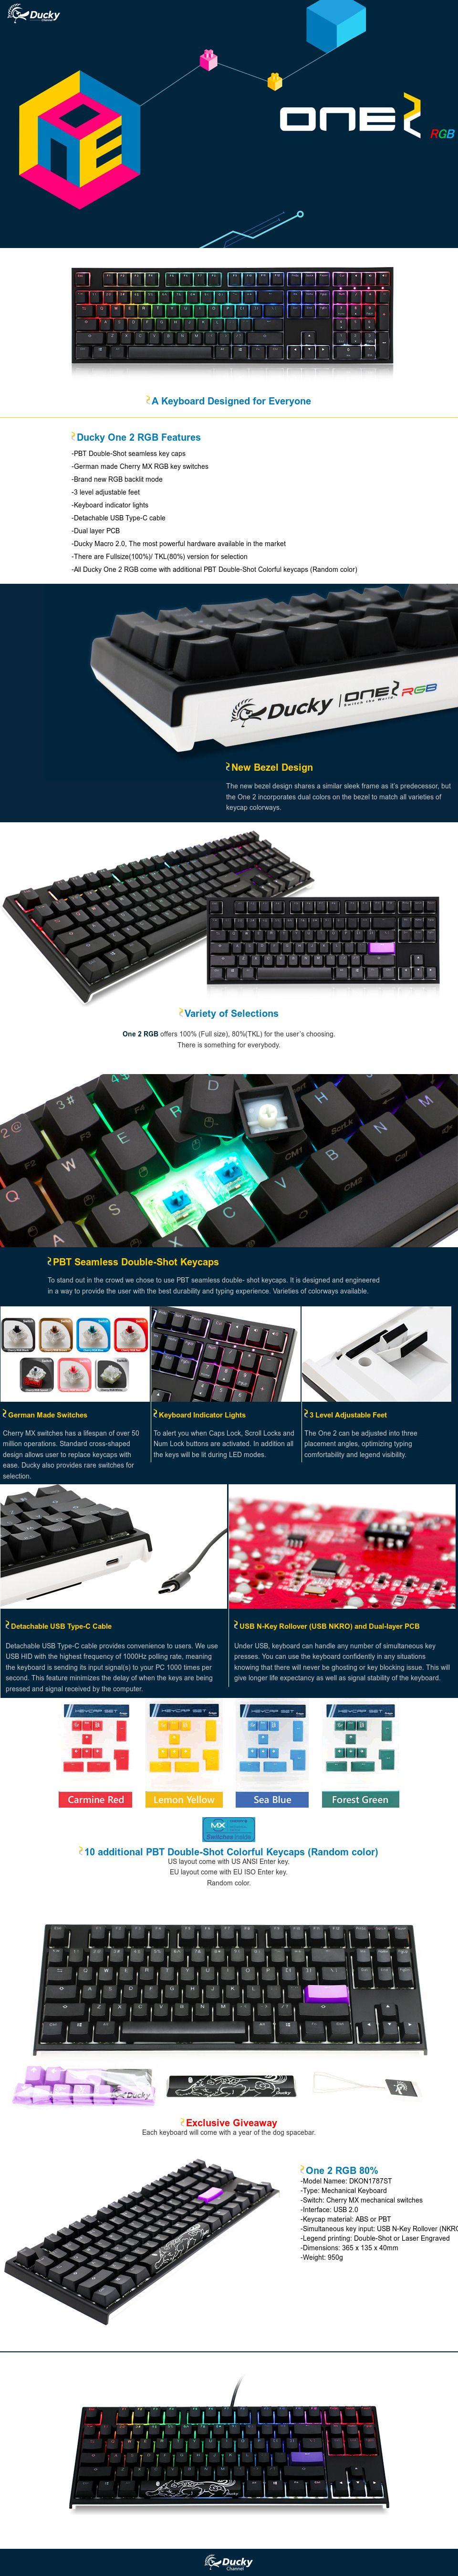 Ducky One 2 RGB TKL Mechanical Keyboard with Cherry MX Blue Key Switches